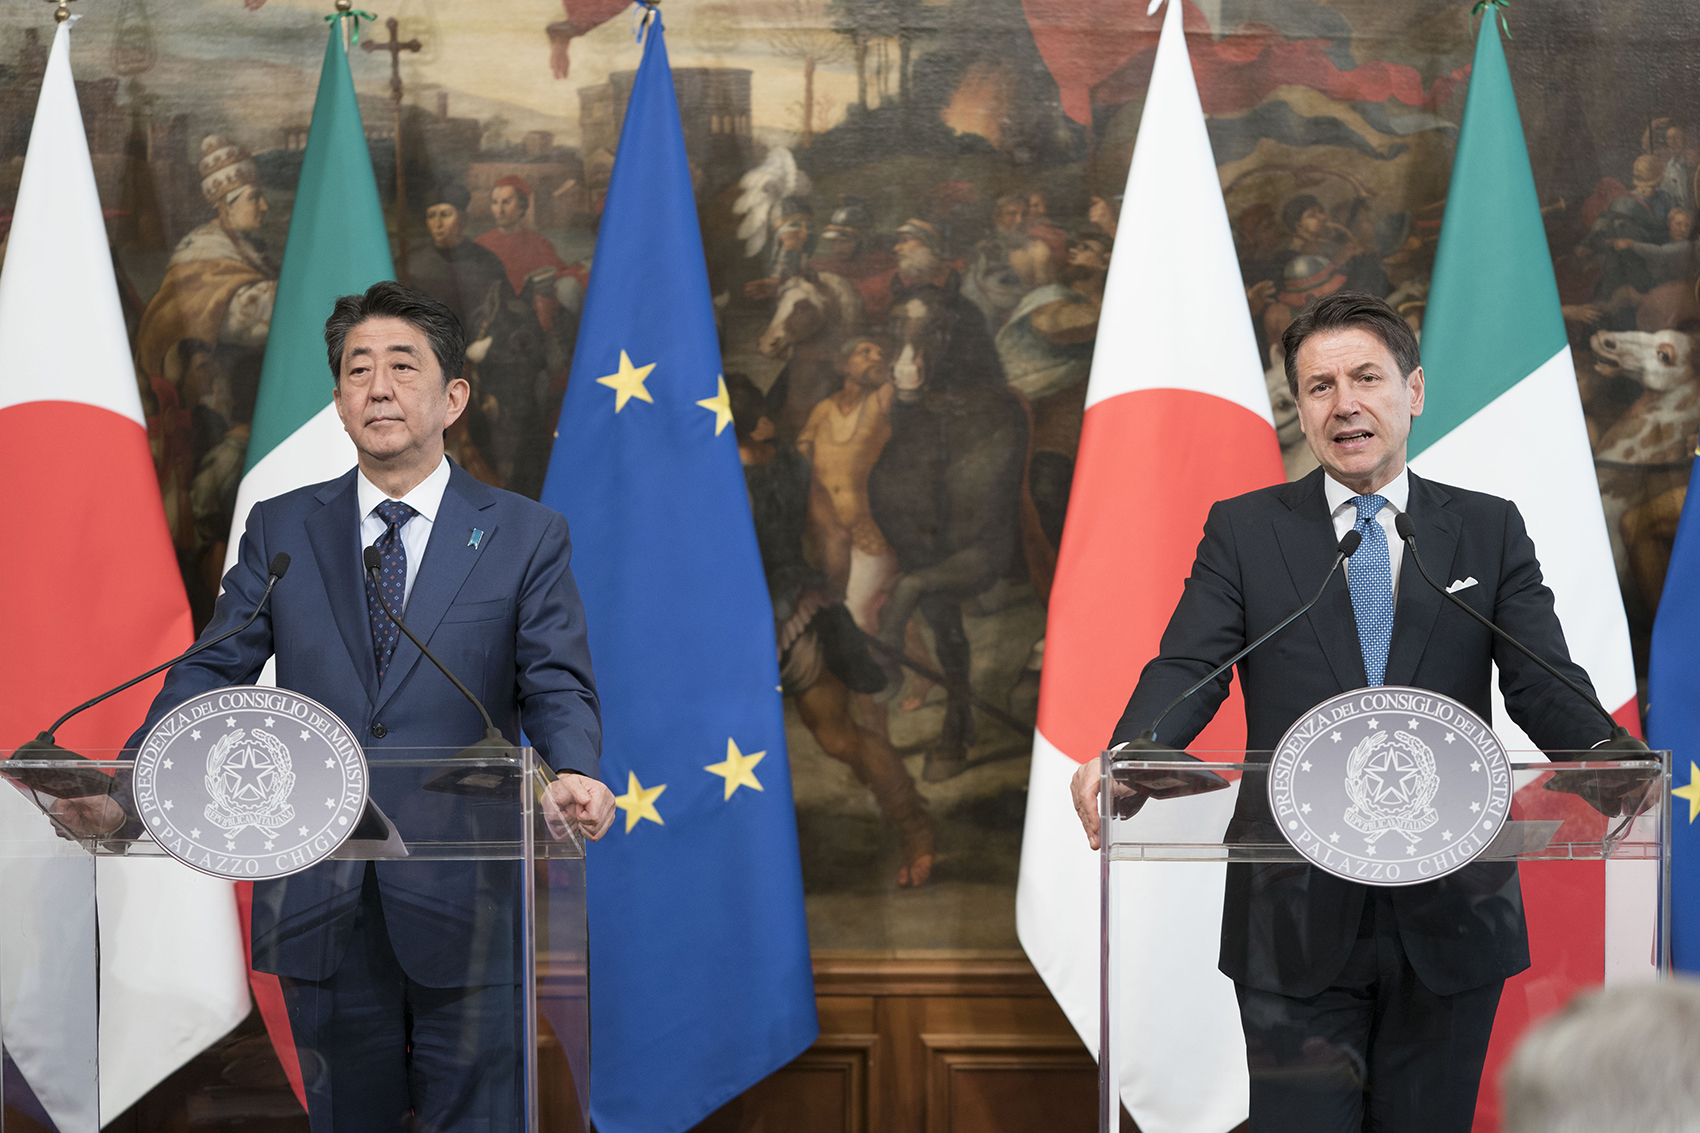 رئيس الوزراء الايطالي جوزيبي كونتي مع ضيفه رئيس وزراء اليابان شينزو آبى